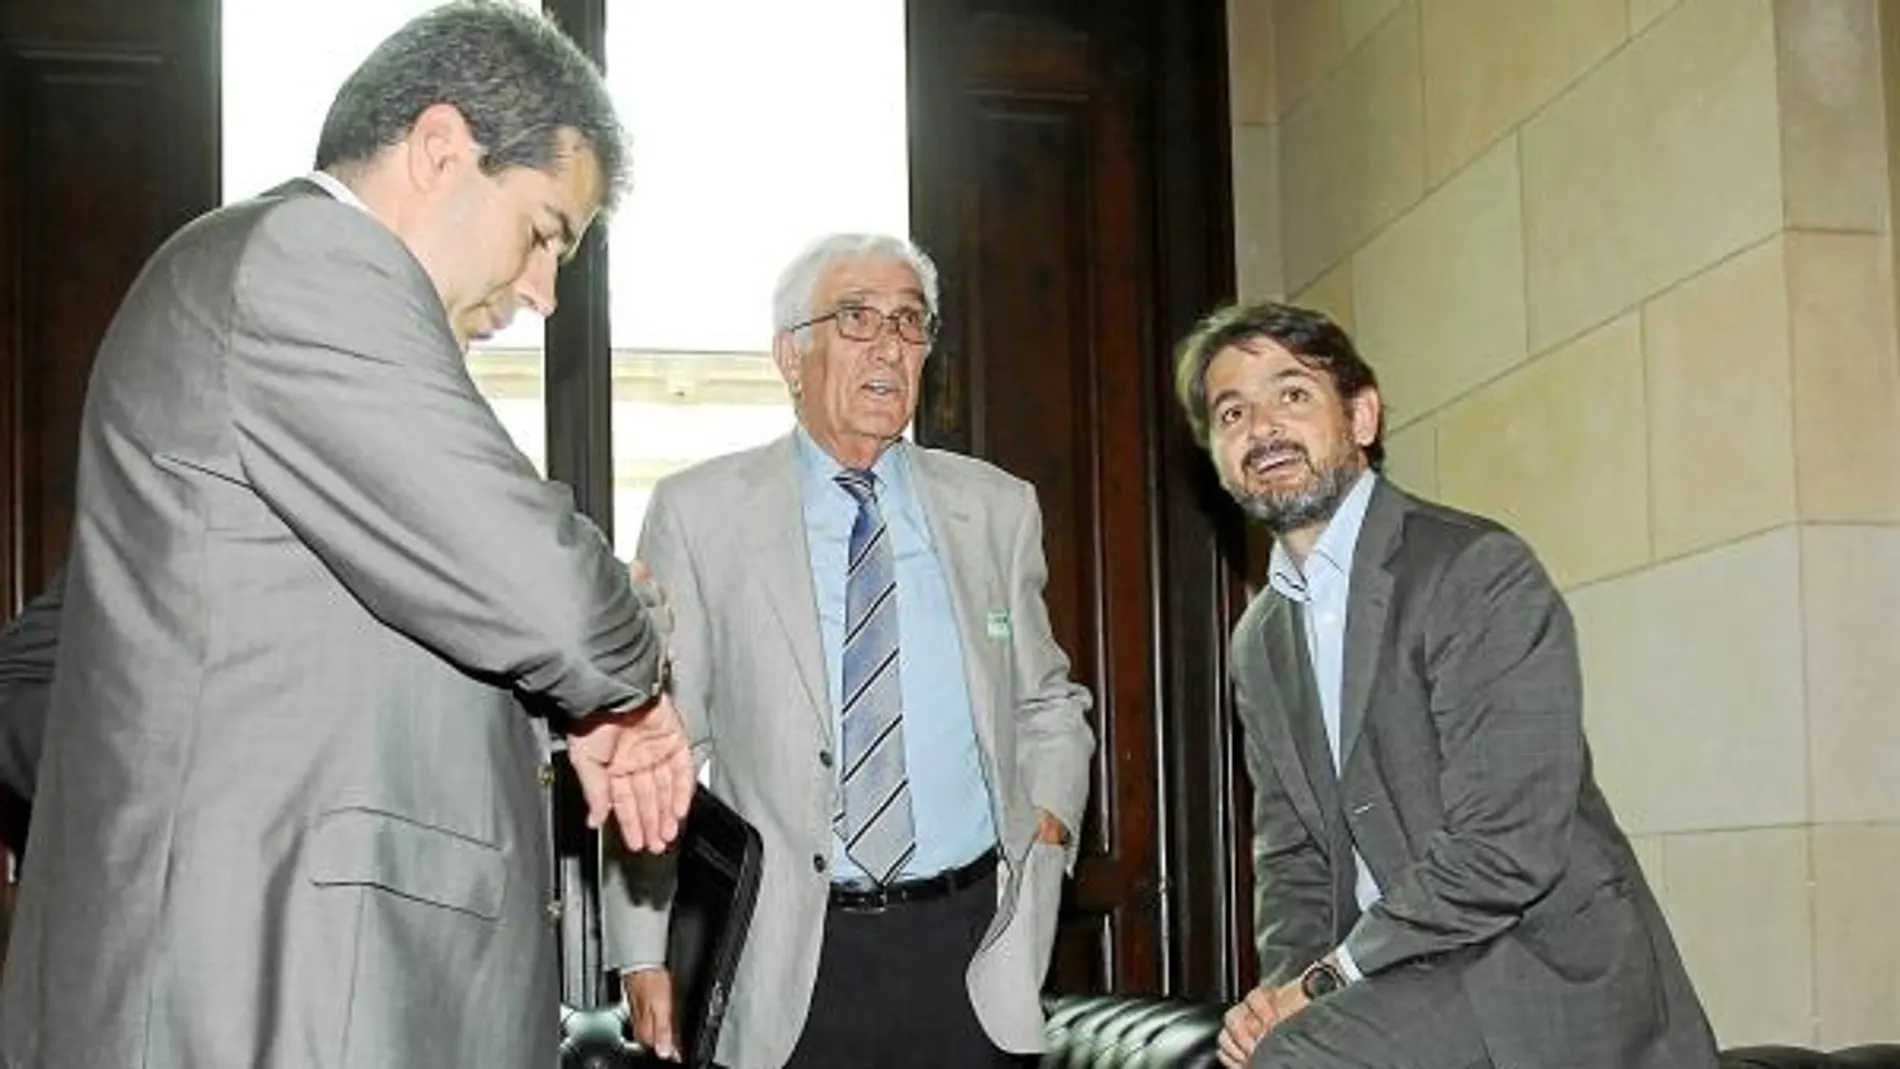 El responsable de finanzas, Daniel Osàcar (centro), junto a Oriol Pujol el dia que compareció en el Parlament